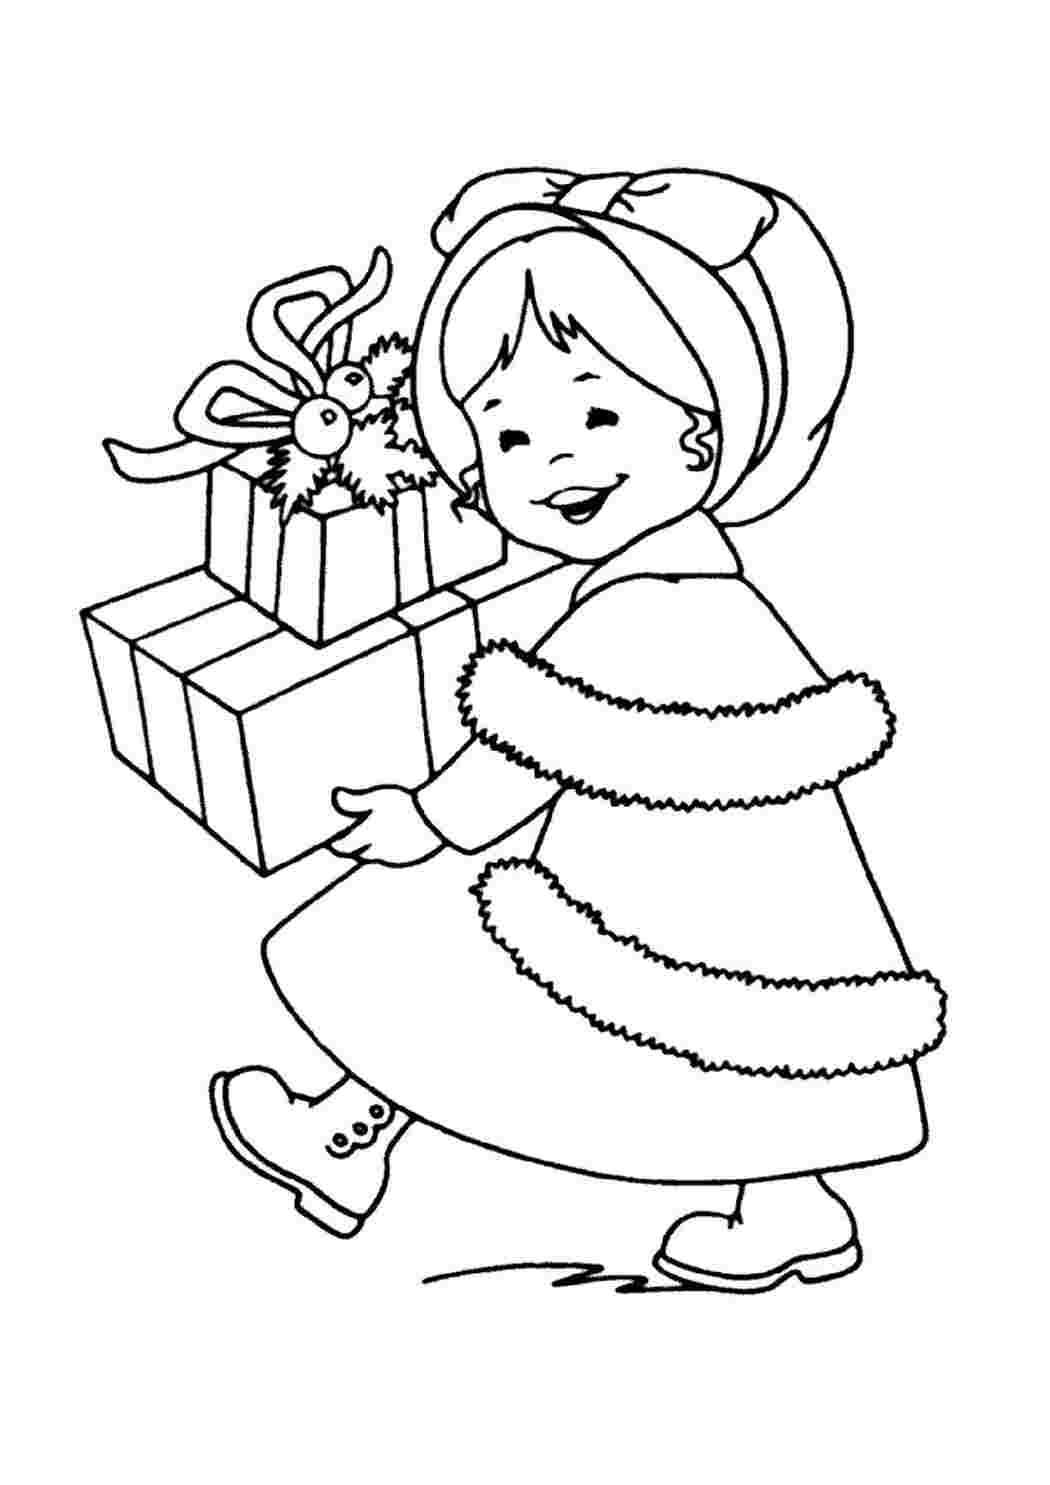 Подарок — раскраска для детей. Распечатать бесплатно.